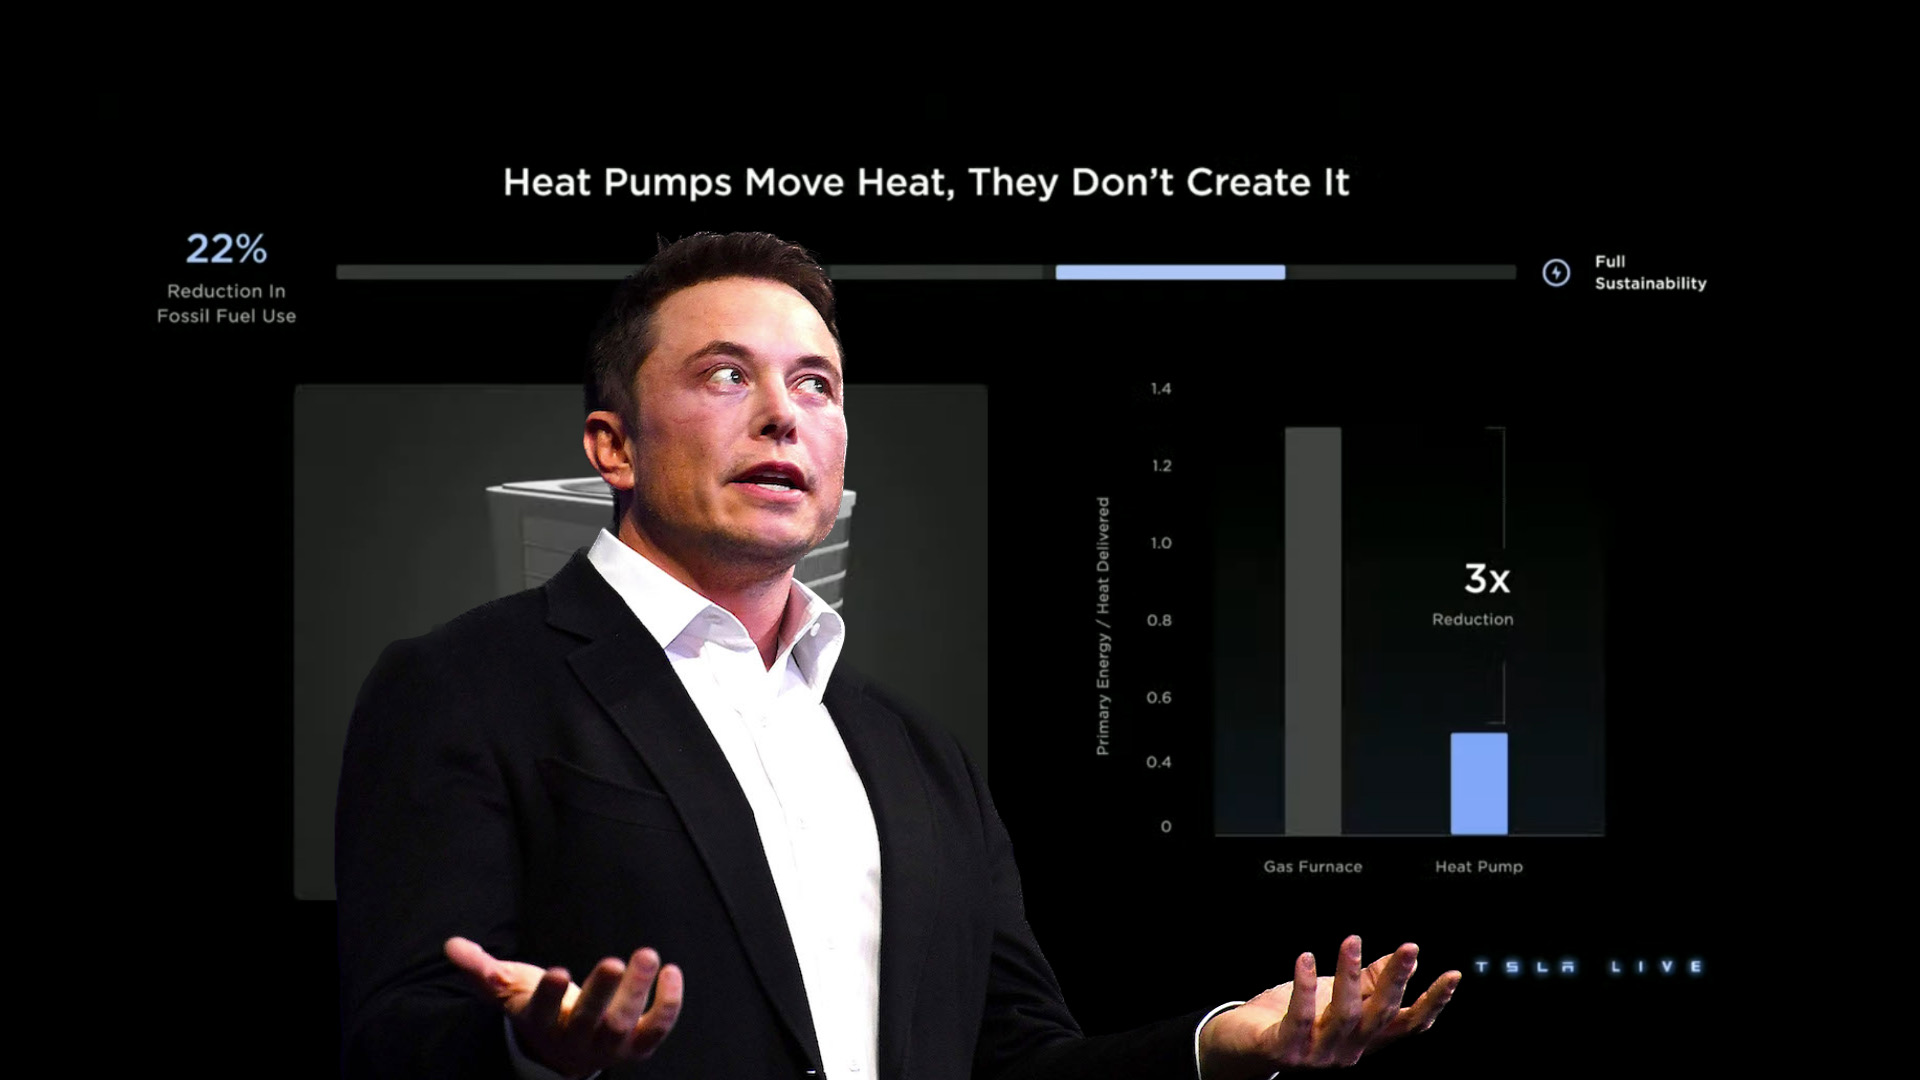 Elon Musk talks about Heat Pumps